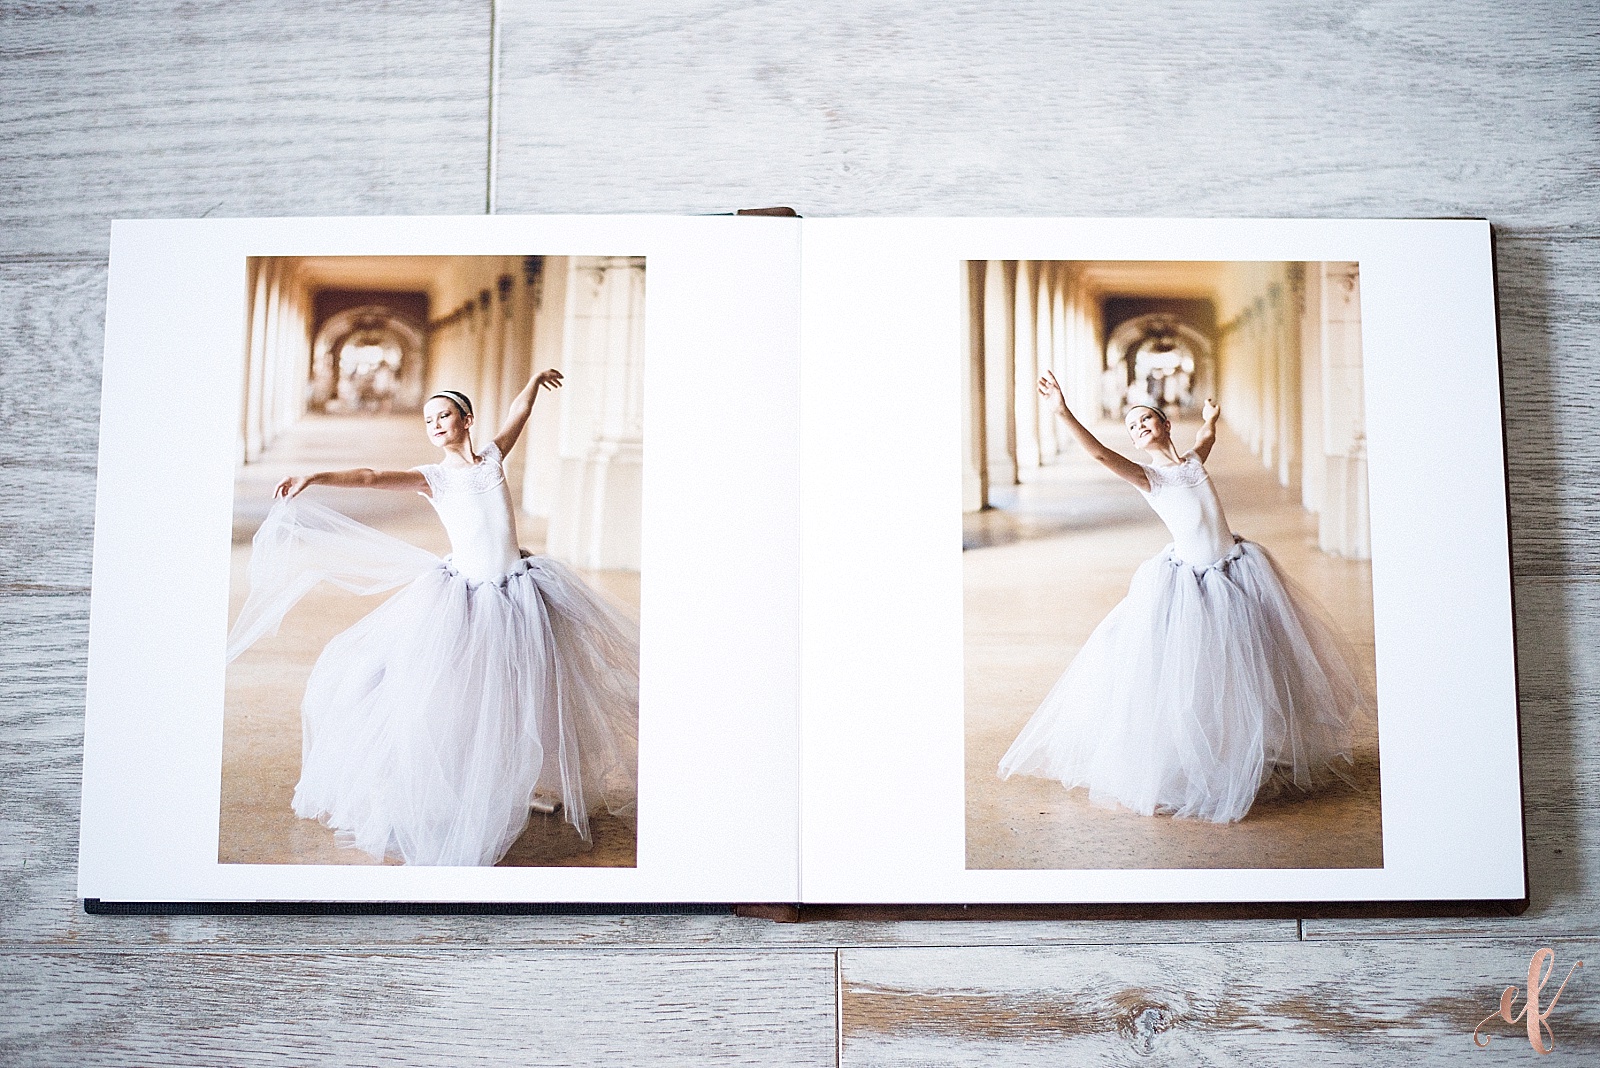 San Diego Portrait Photographer | Ballet Portraits | Album